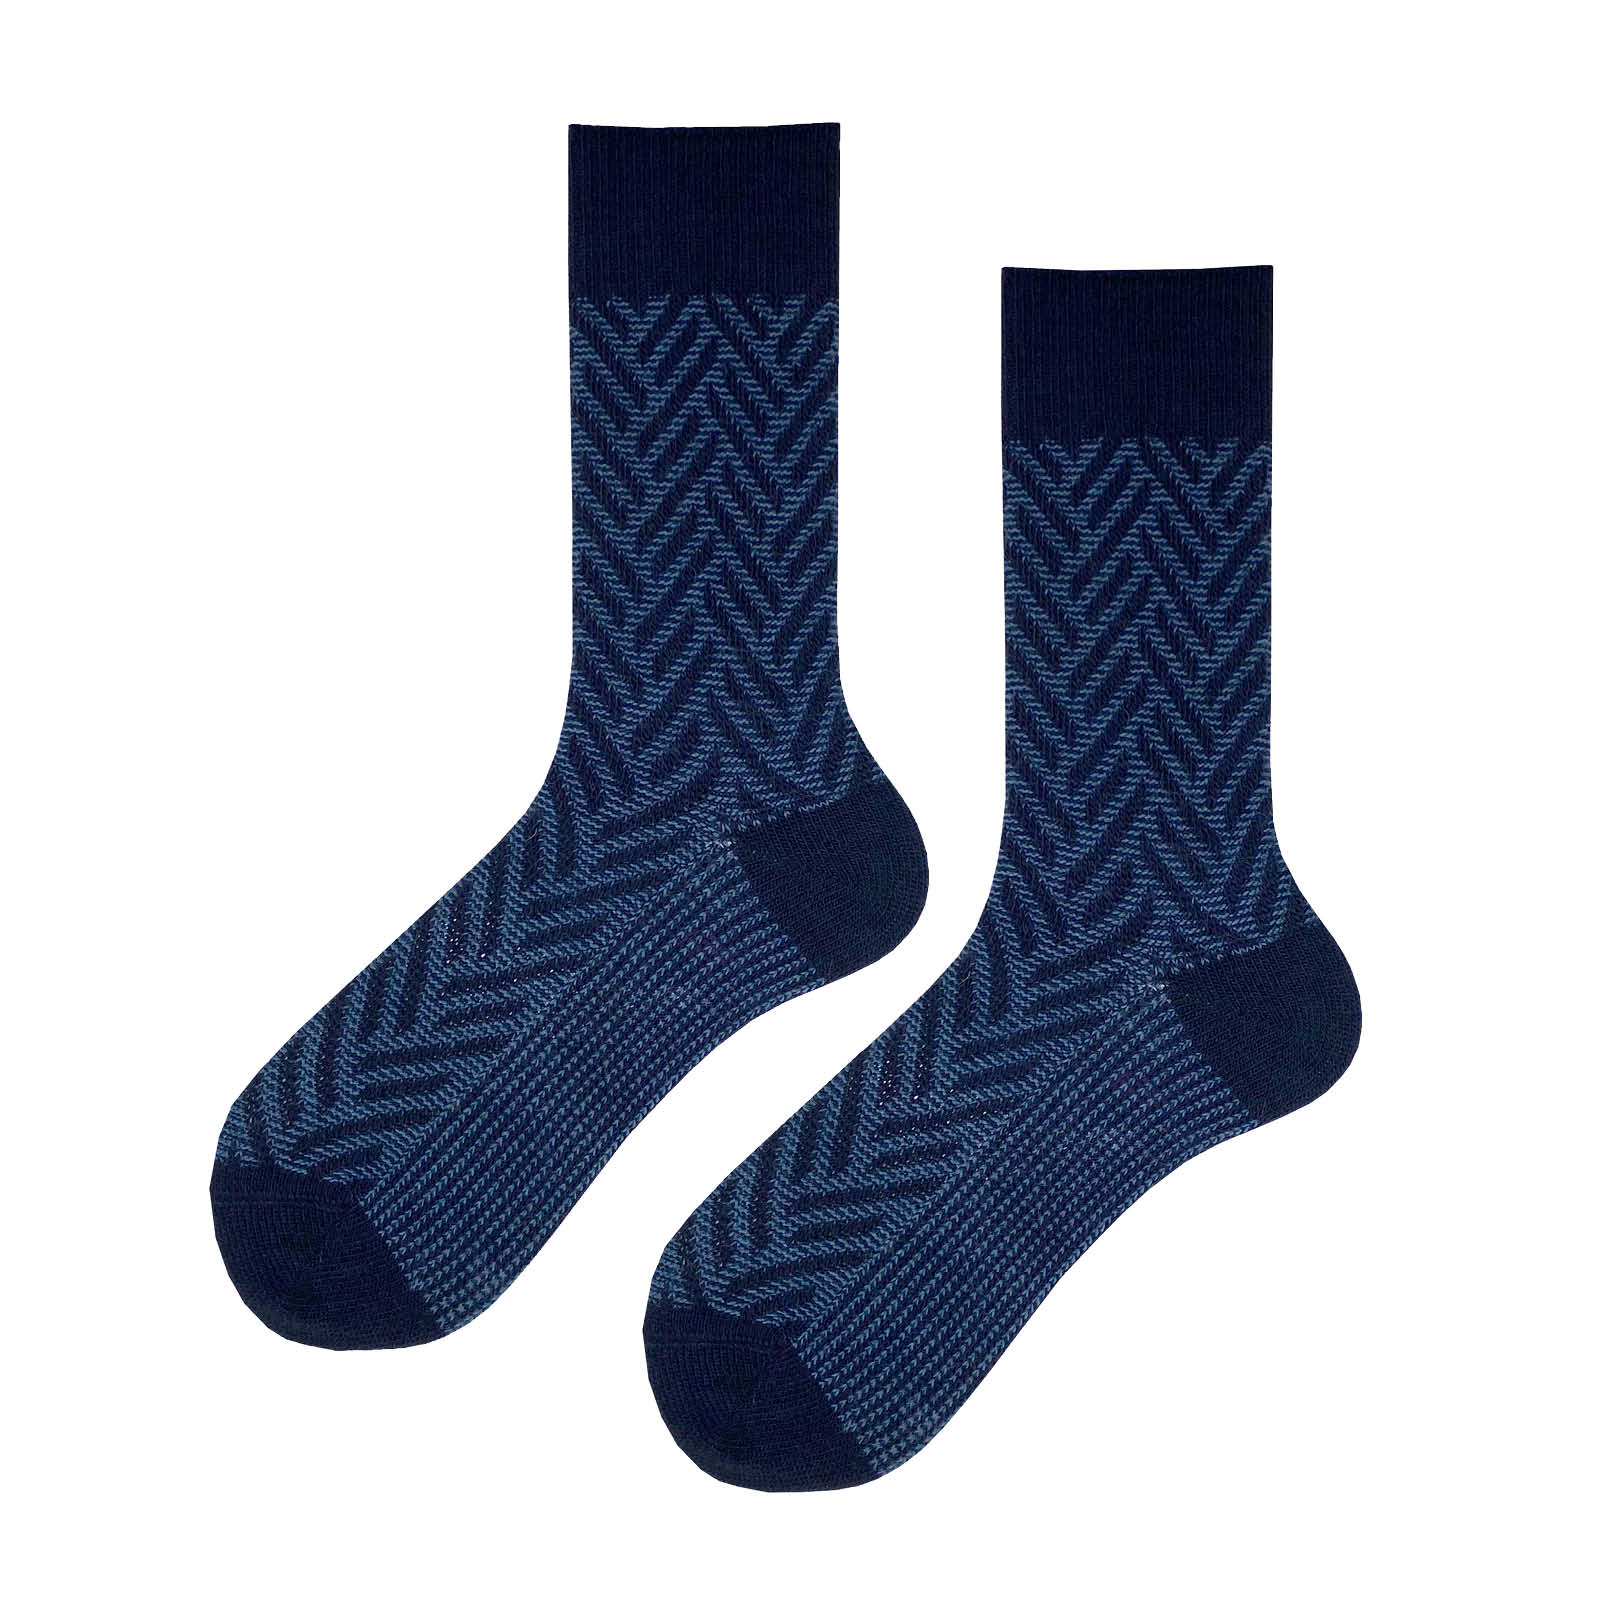 HUDSON Herren ARROW -  39/42 - Herren Socken mit klassischer  winterlicher Musterung - Marine (Blau)